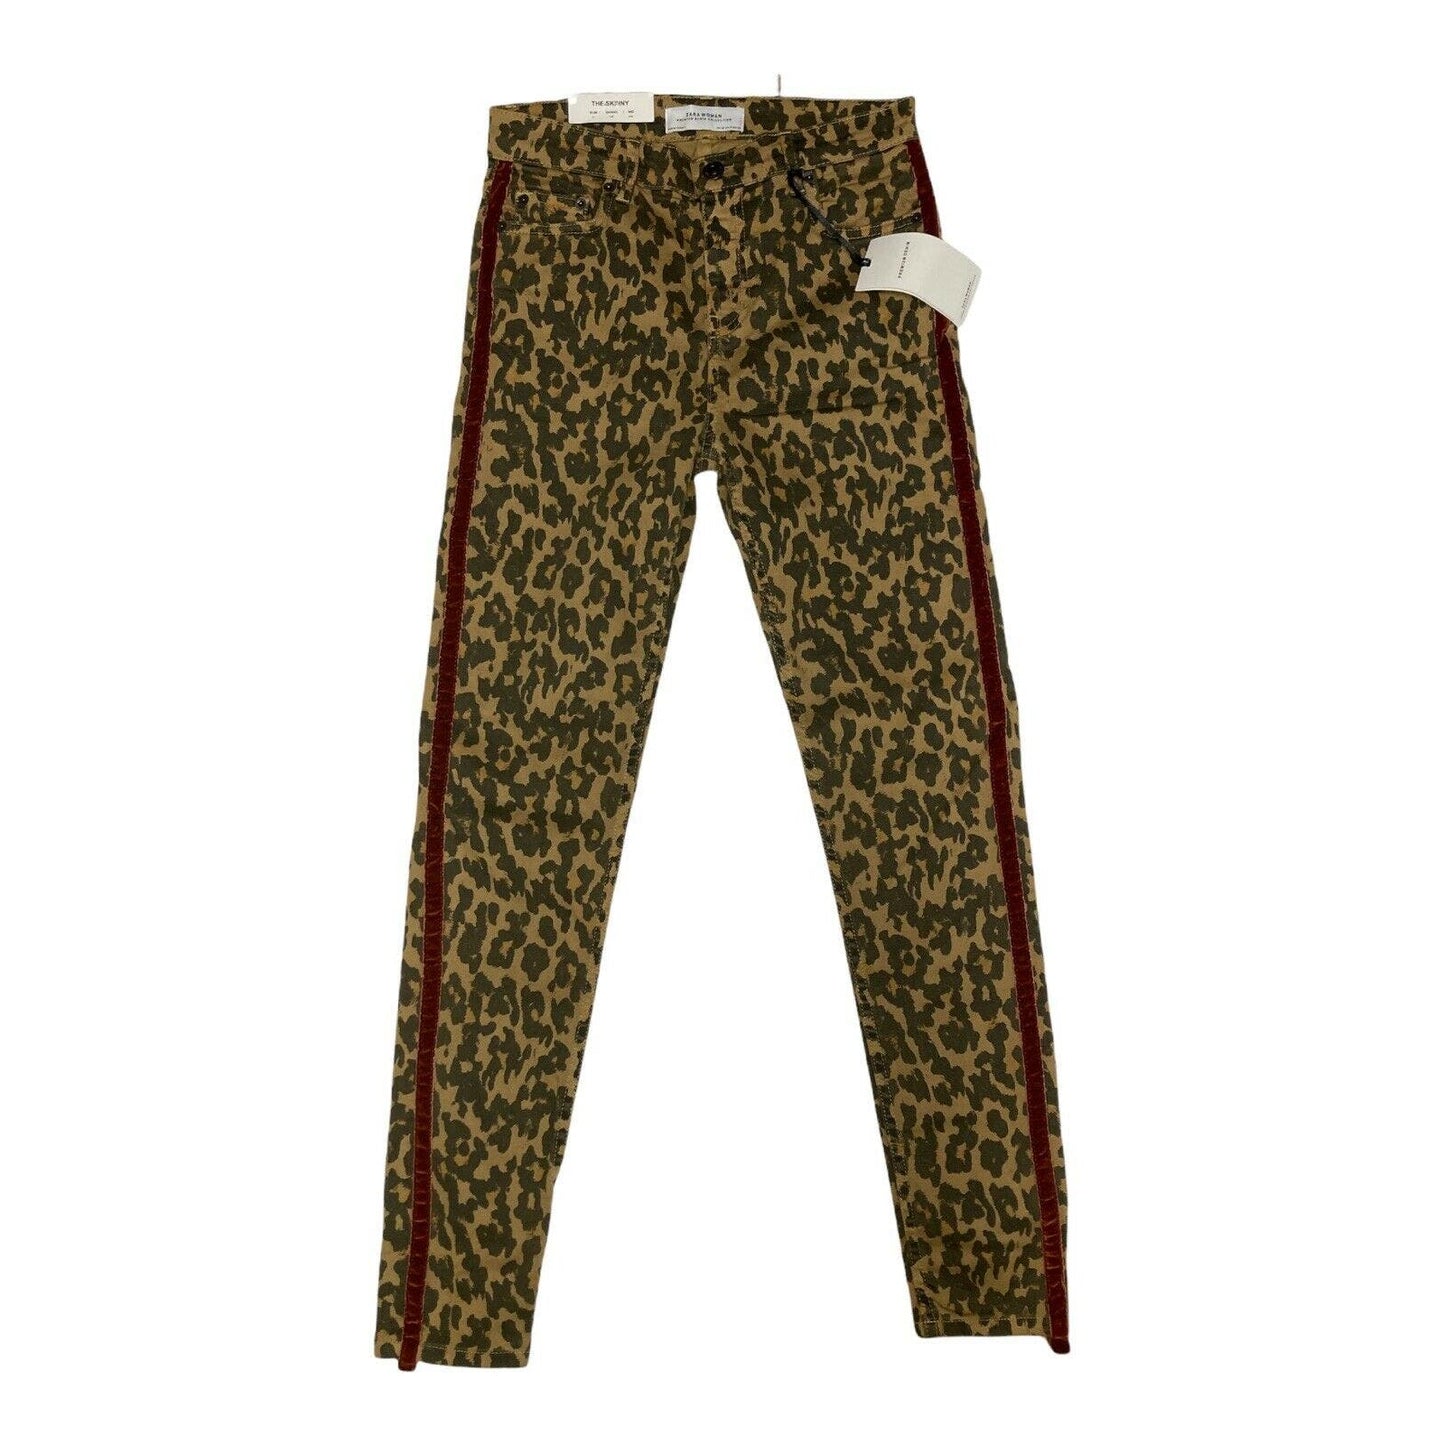 ZARA Woman Leopard Jeans Animal Print Skinny Red Velvet Stripe Size 4